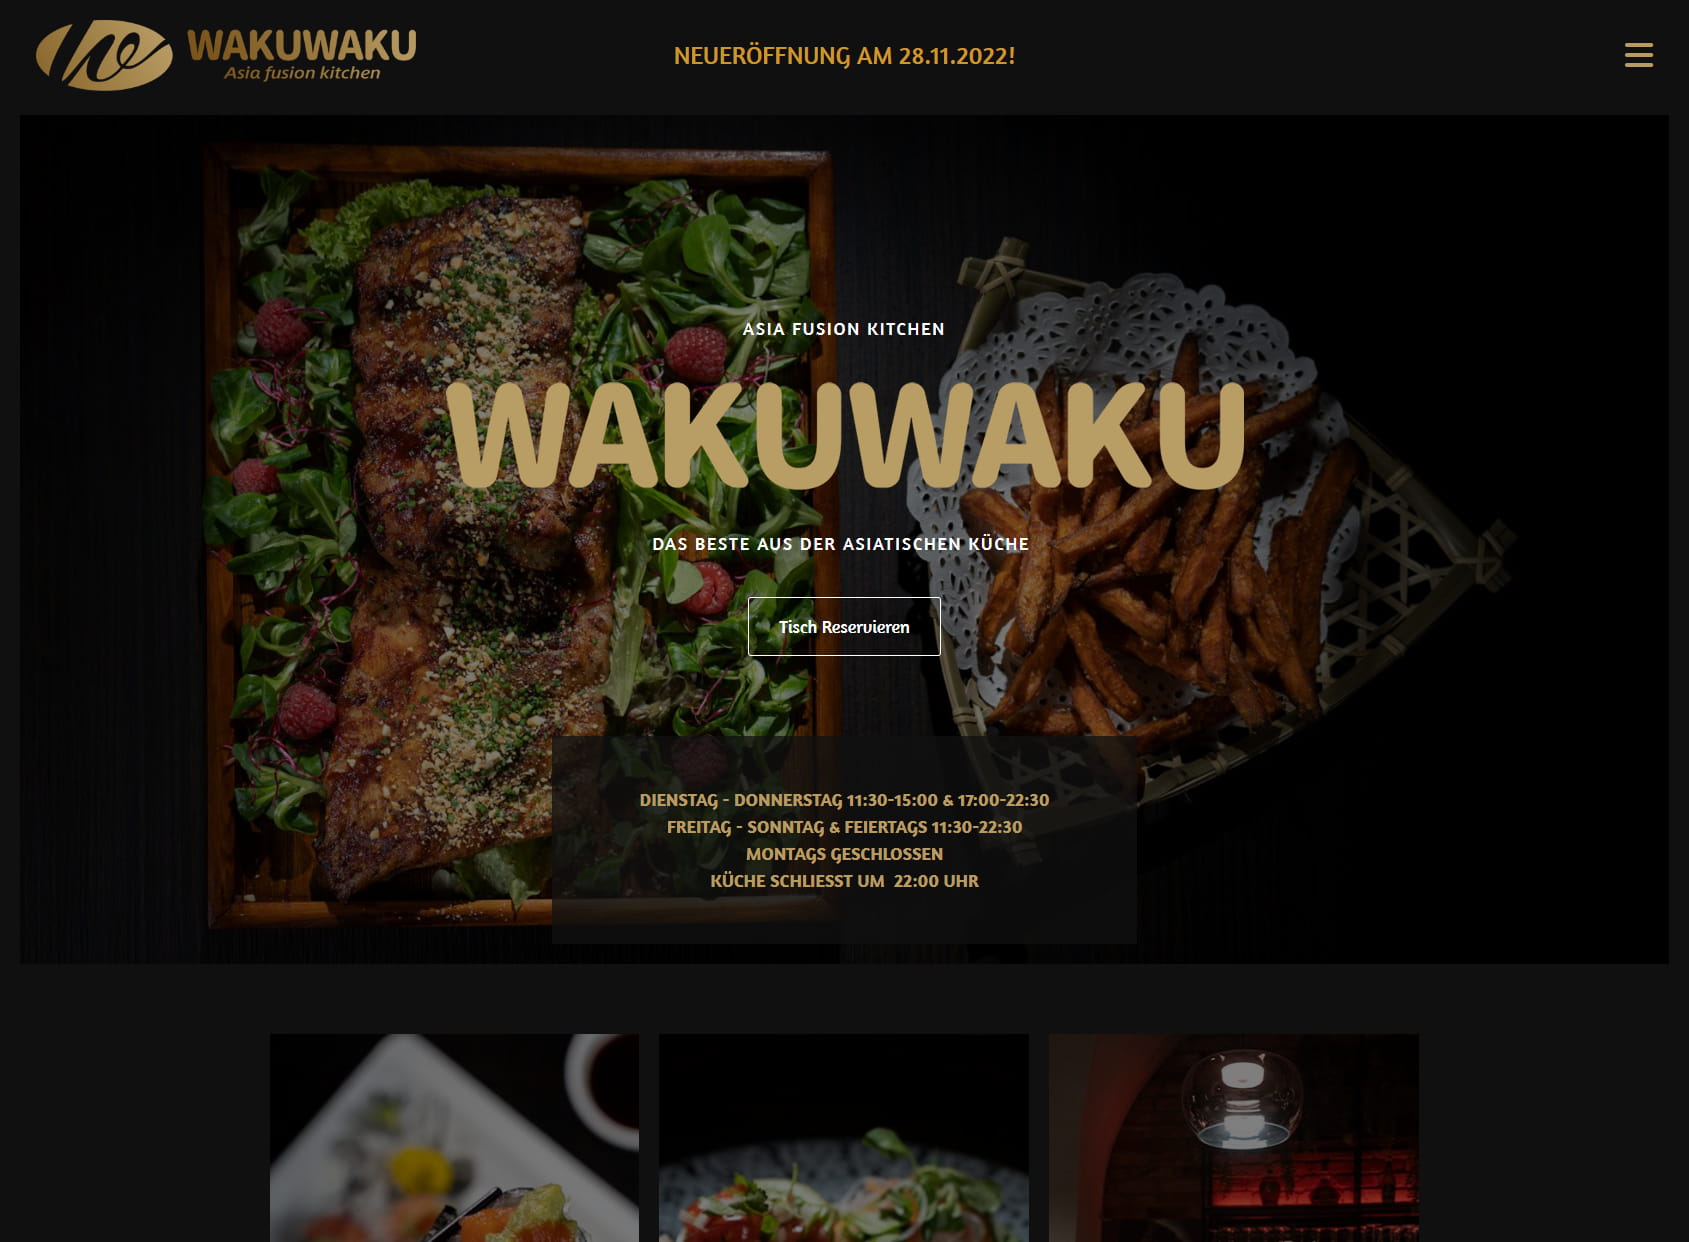 WAKUWAKU Asia fusion kitchen